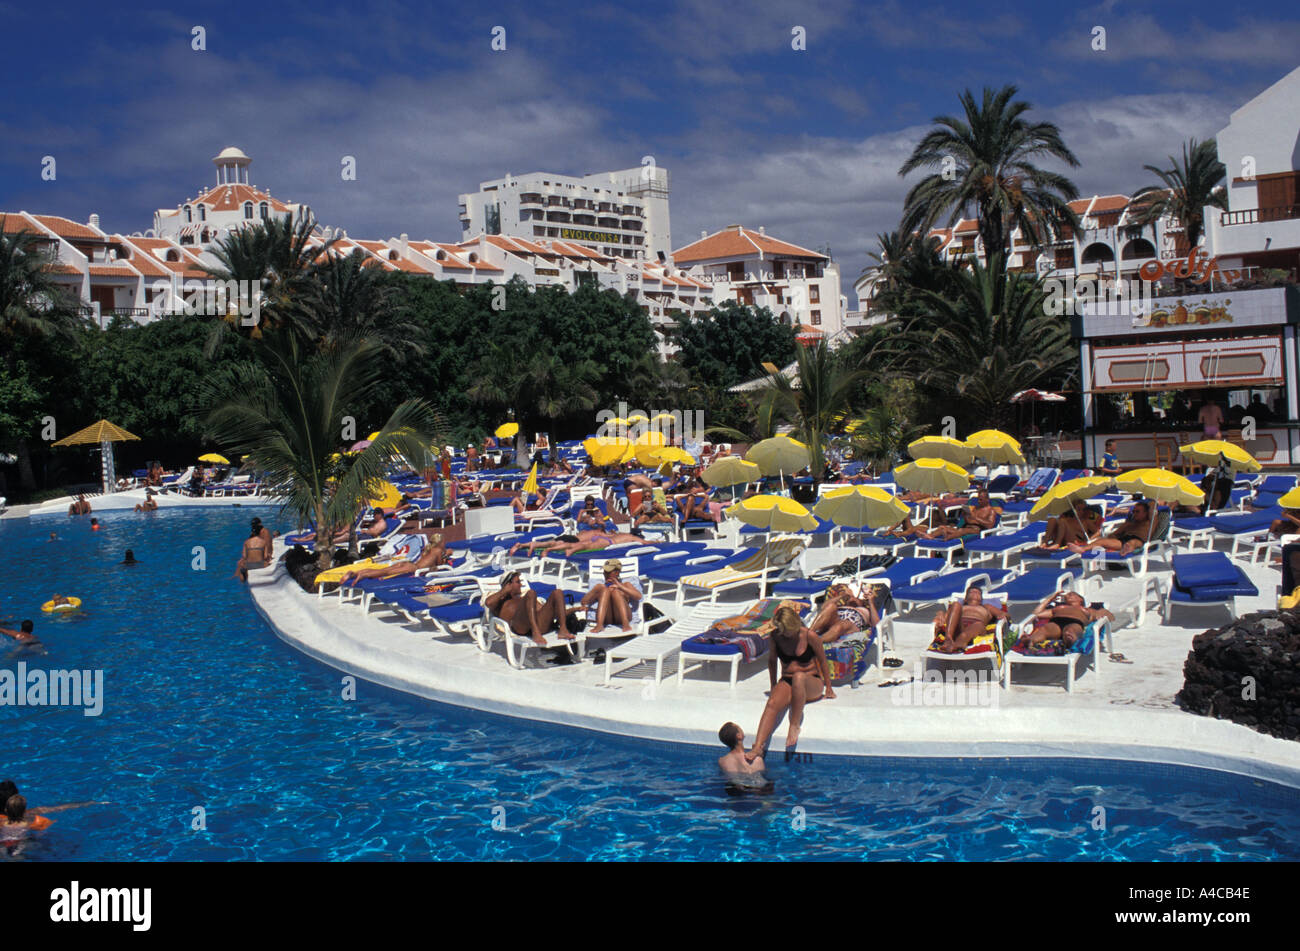 La piscina dell'hotel a Playa de las Americas in Tenerife, Spagna Foto Stock